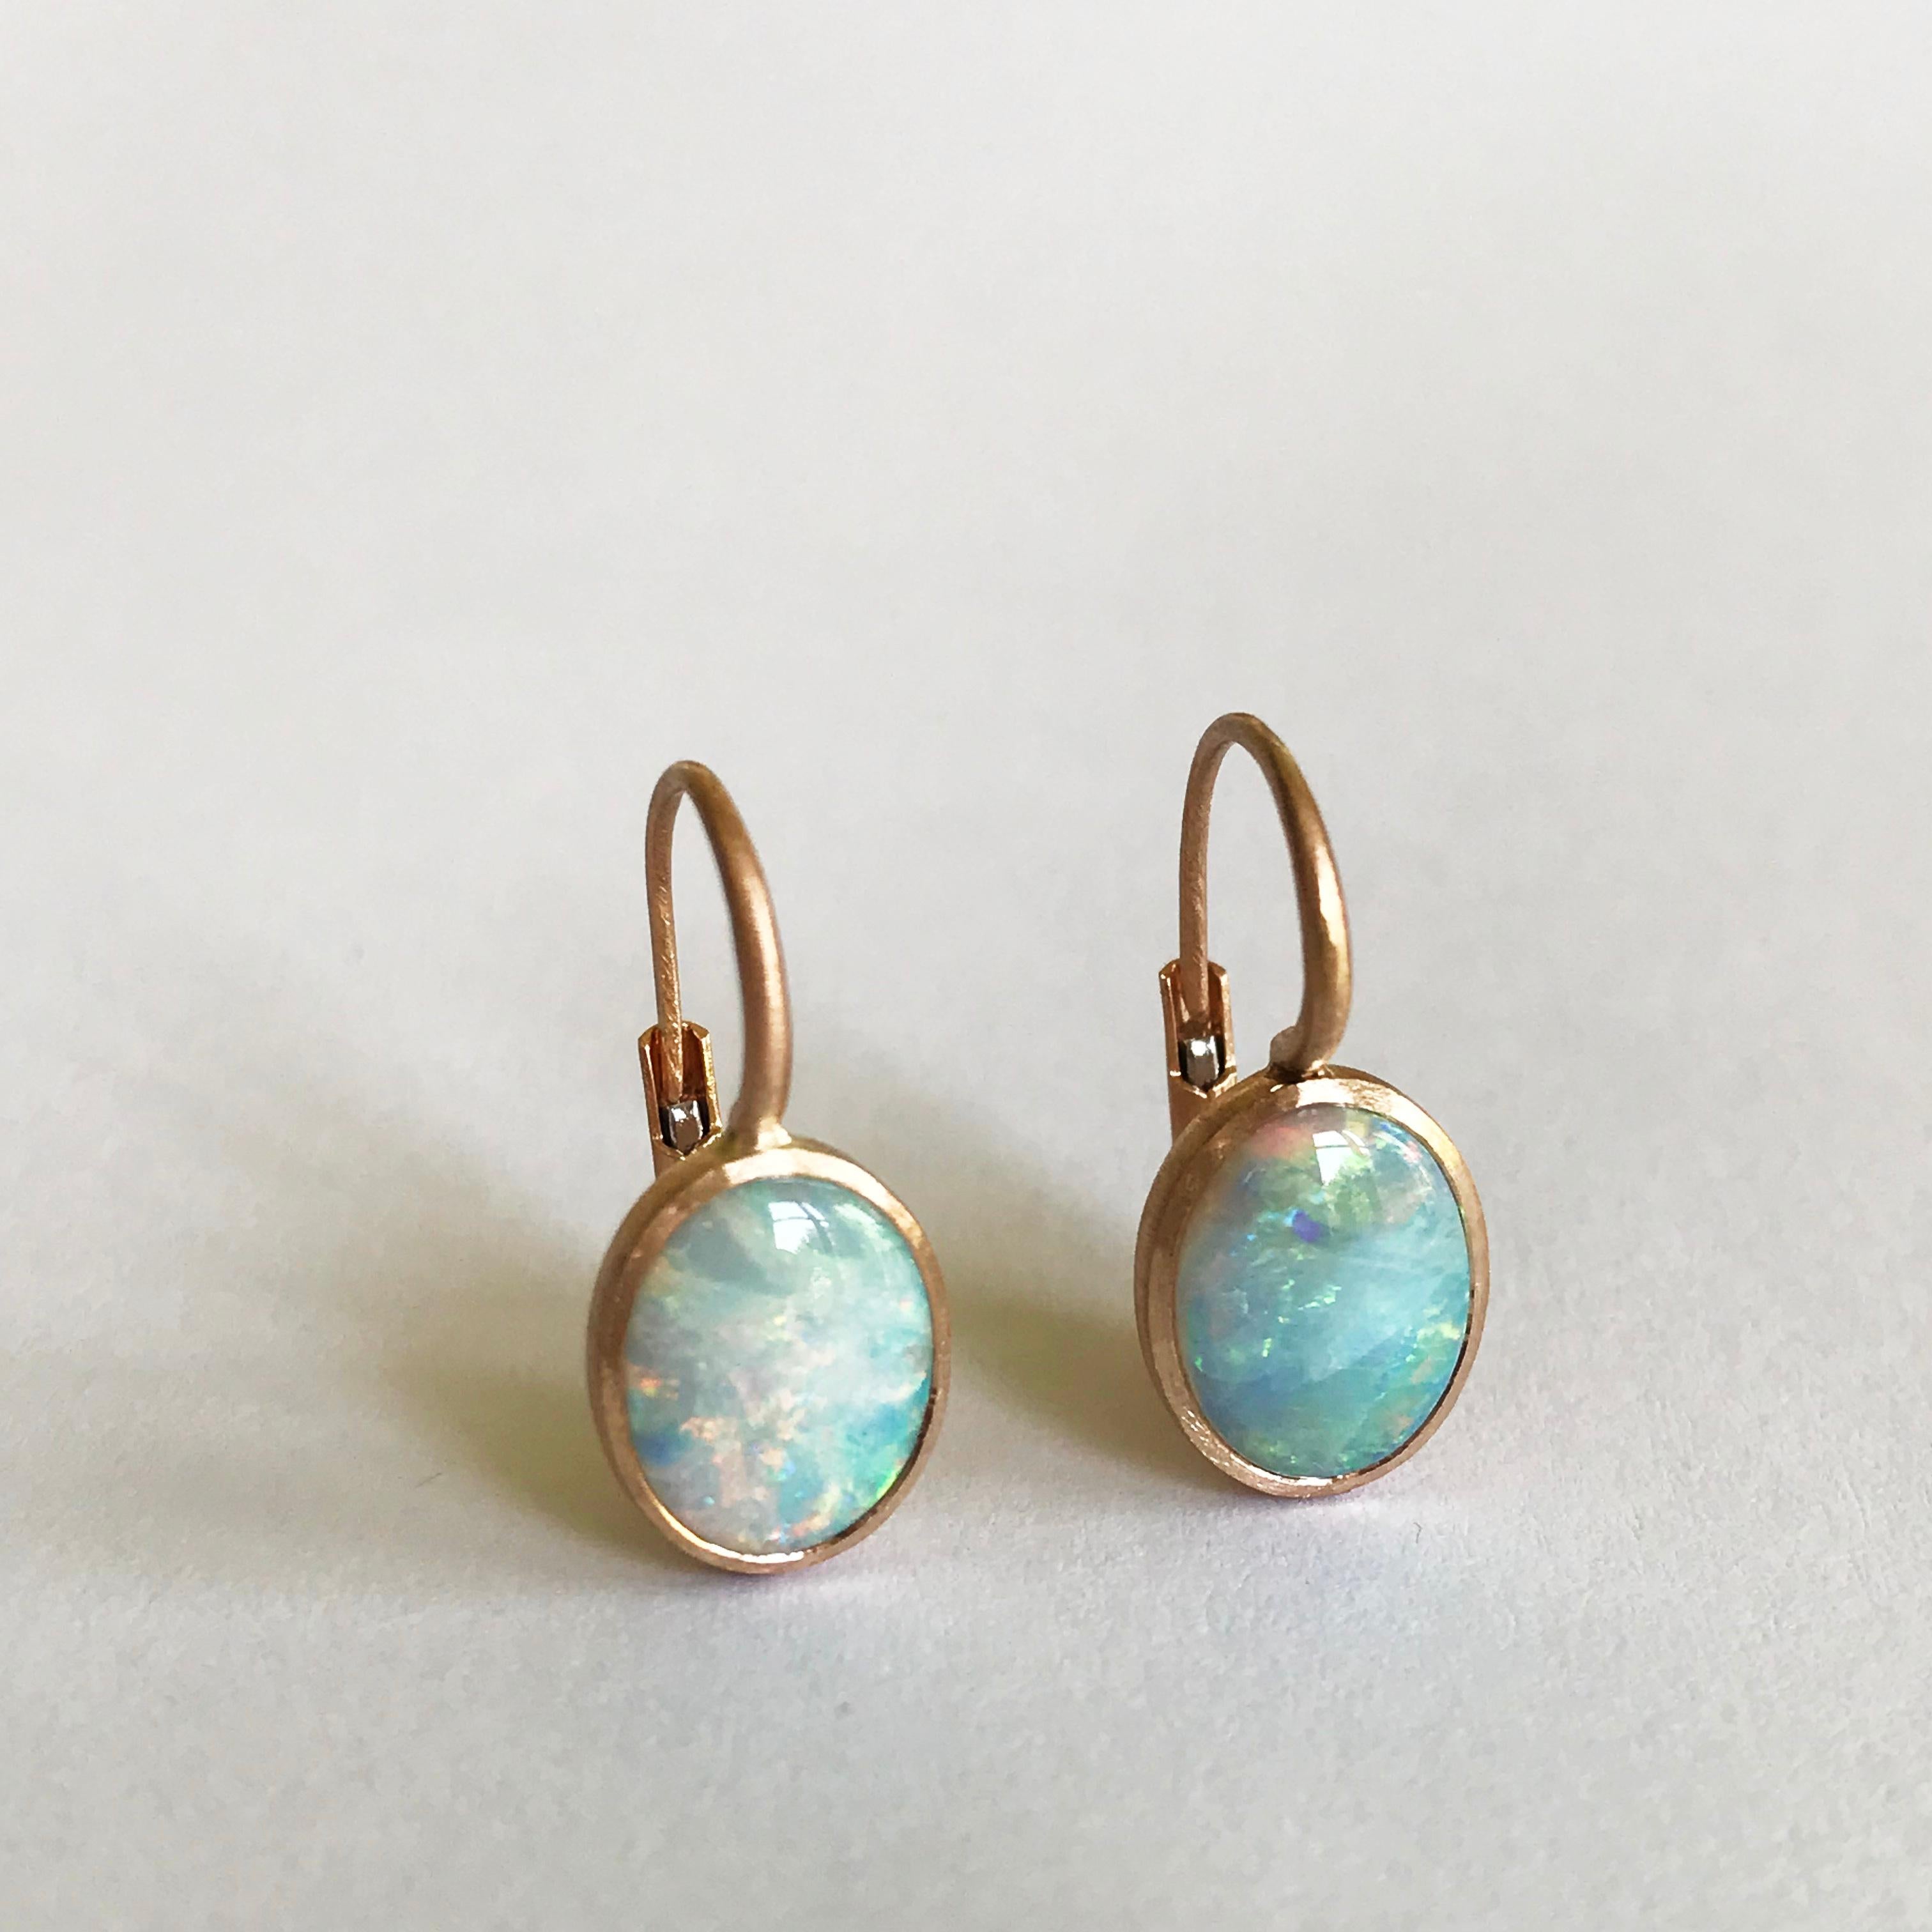 Dalben Little Oval Australian Opal Rose Gold Earrings For Sale 1